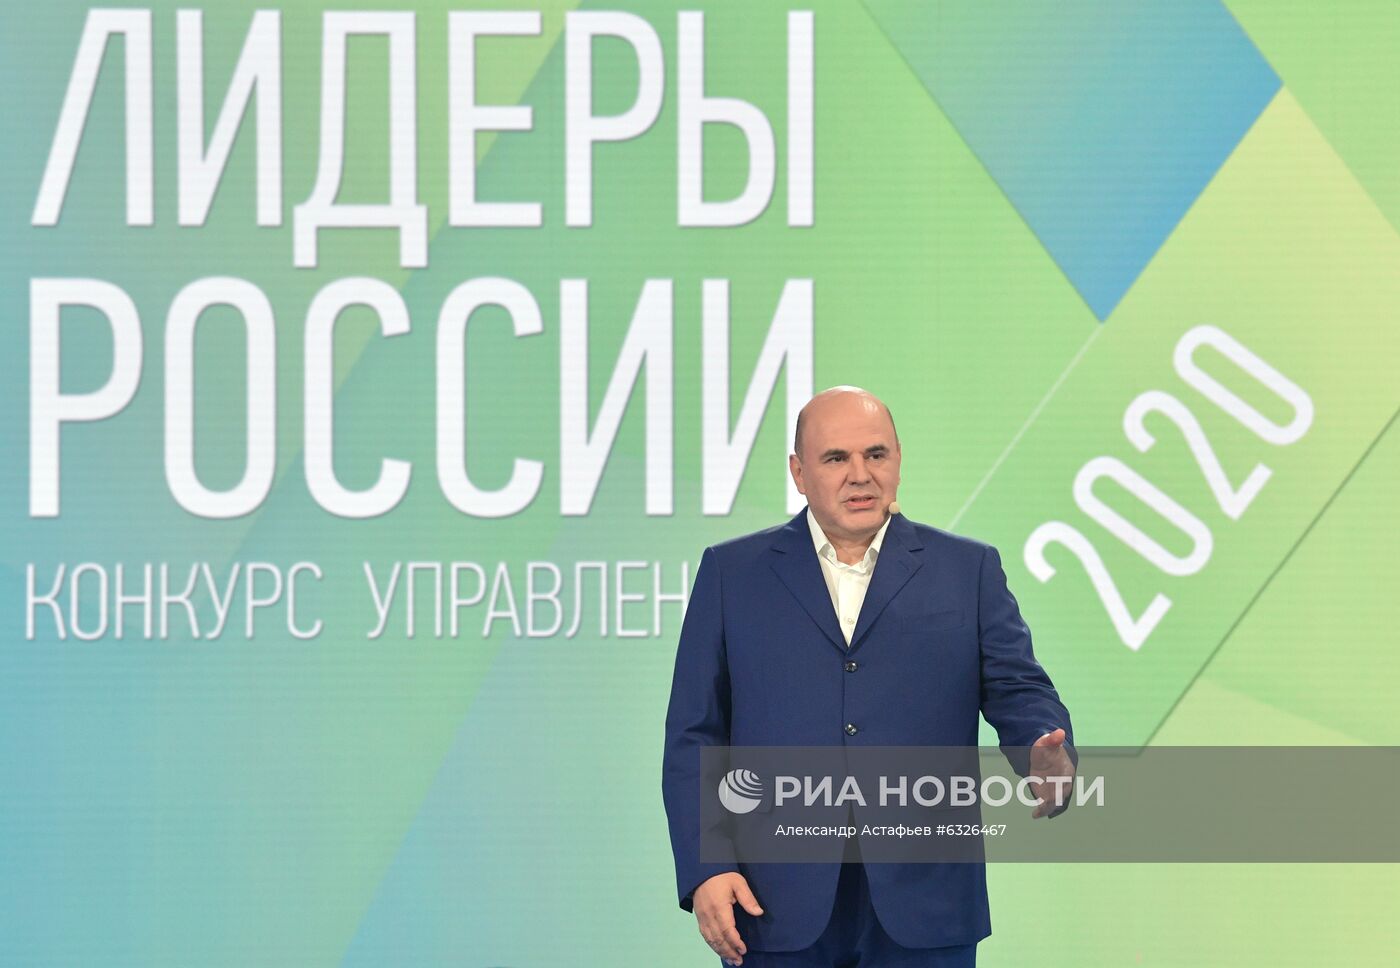 Премьер-министр РФ М. Мишустин посетил суперфинал конкурса "Лидеры России"